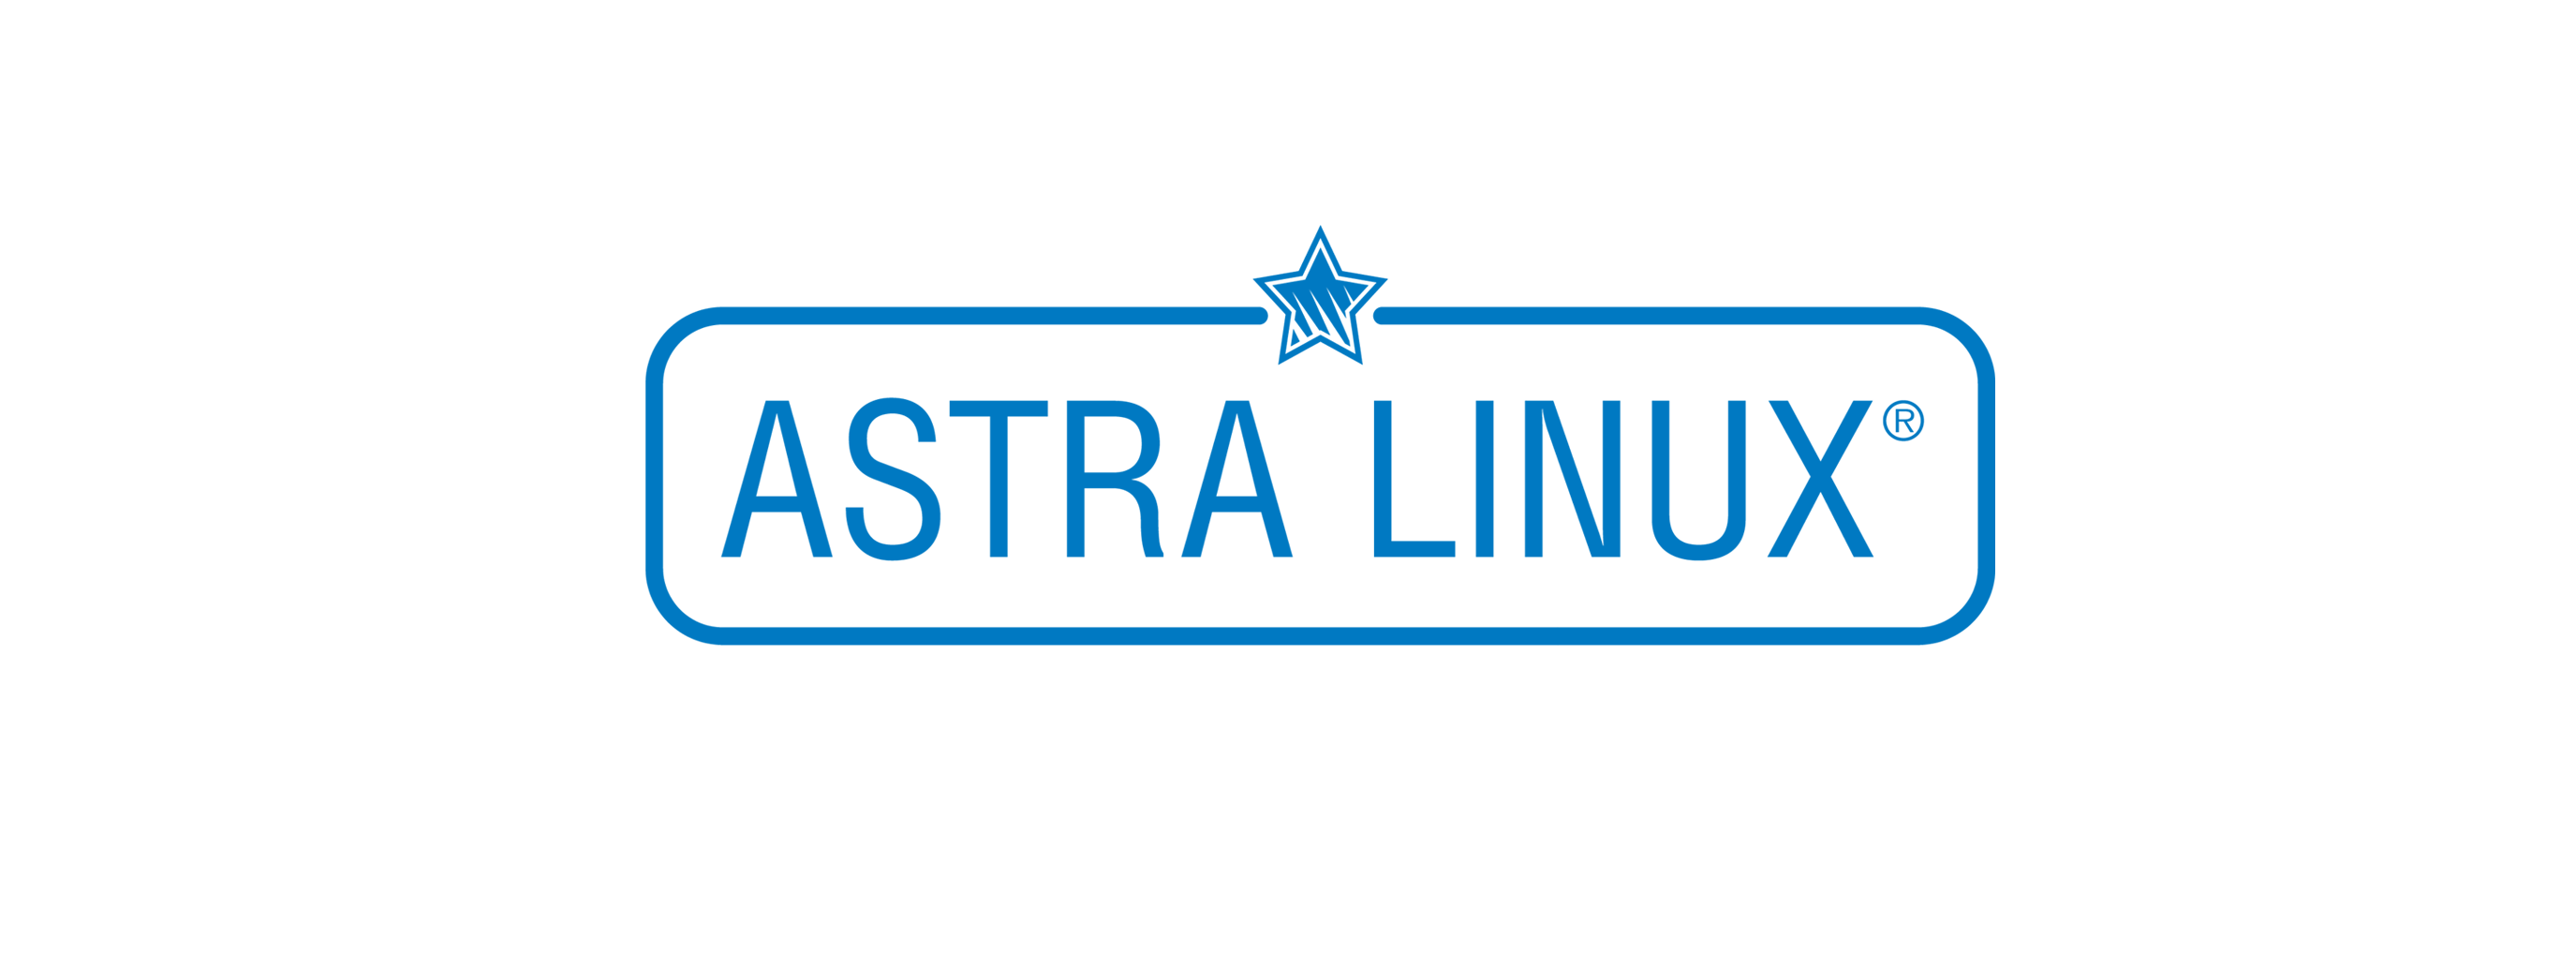 Лицензия РусБИТех Astra Linux Special Edition (очередное обновление 1.7), уровень защищенности Максимальный (Смоленск), РУСБ.10015-01 (ФСТЭК), Russian, на 24 месяца базовая лицензия для сервера до 2 сокетов и неограниченного количества виртуальных машин п